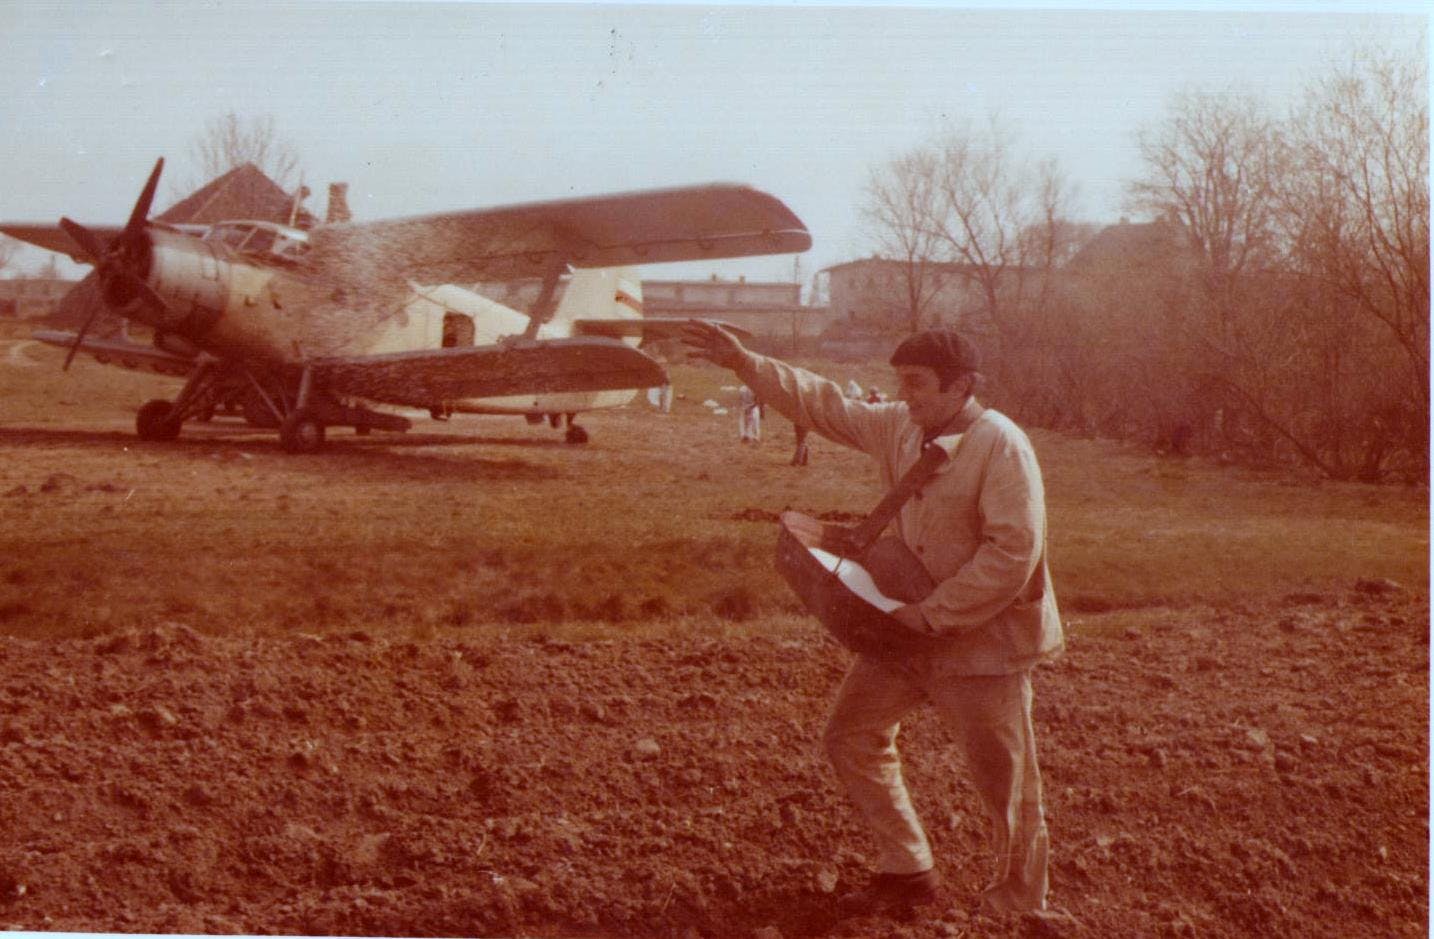 Beginnings in agro-aviation